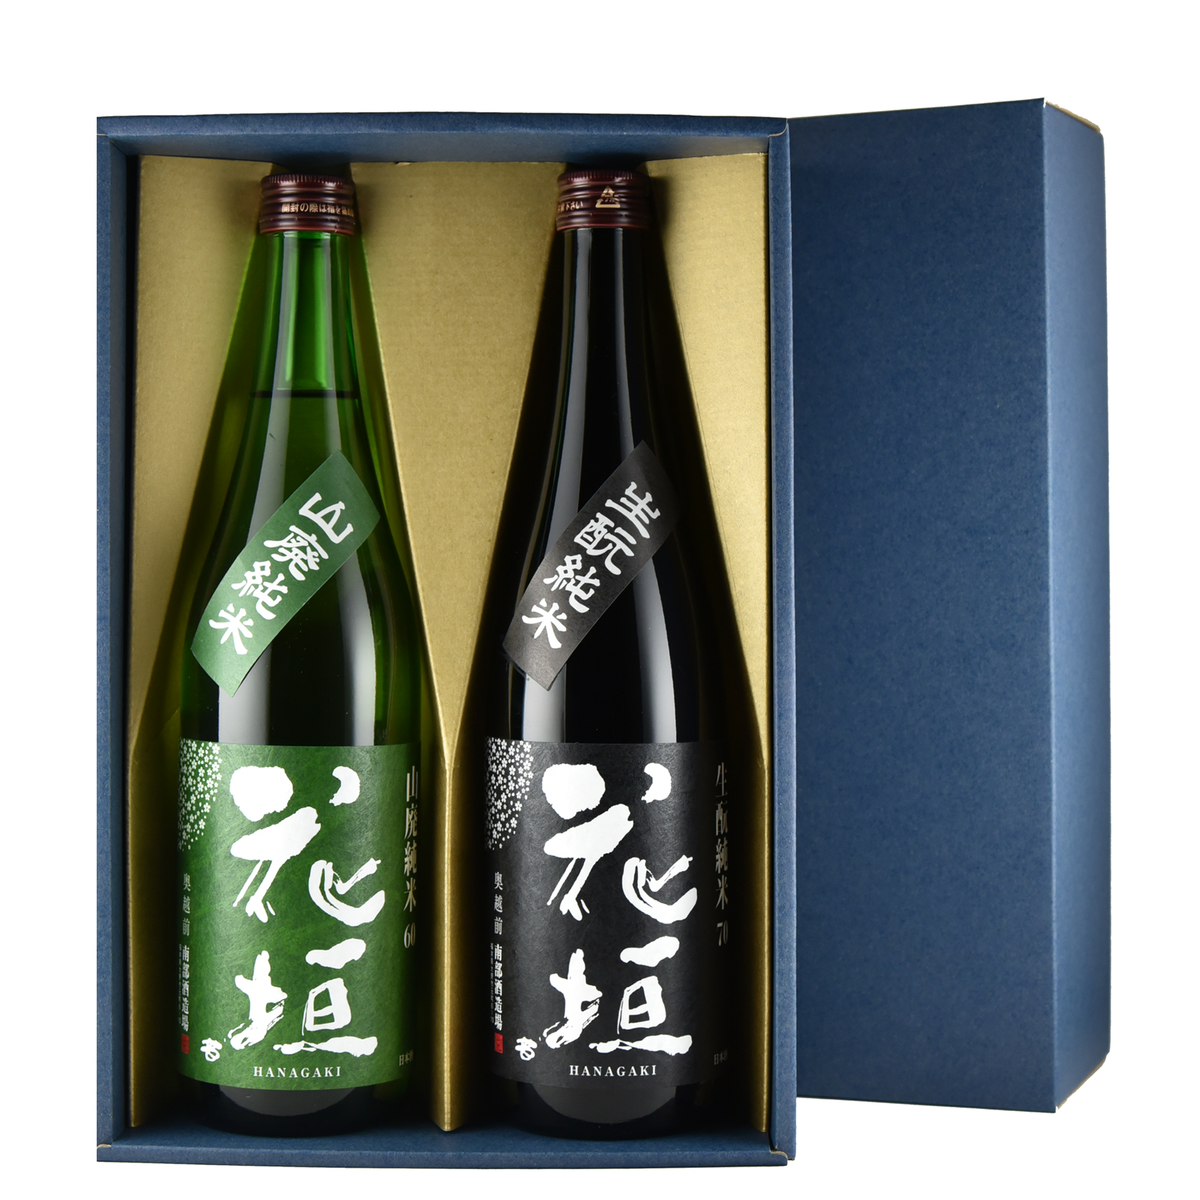 金雀 大吟醸 特別限定醸造、伝承山廃、秘伝隠生酛 - 日本酒